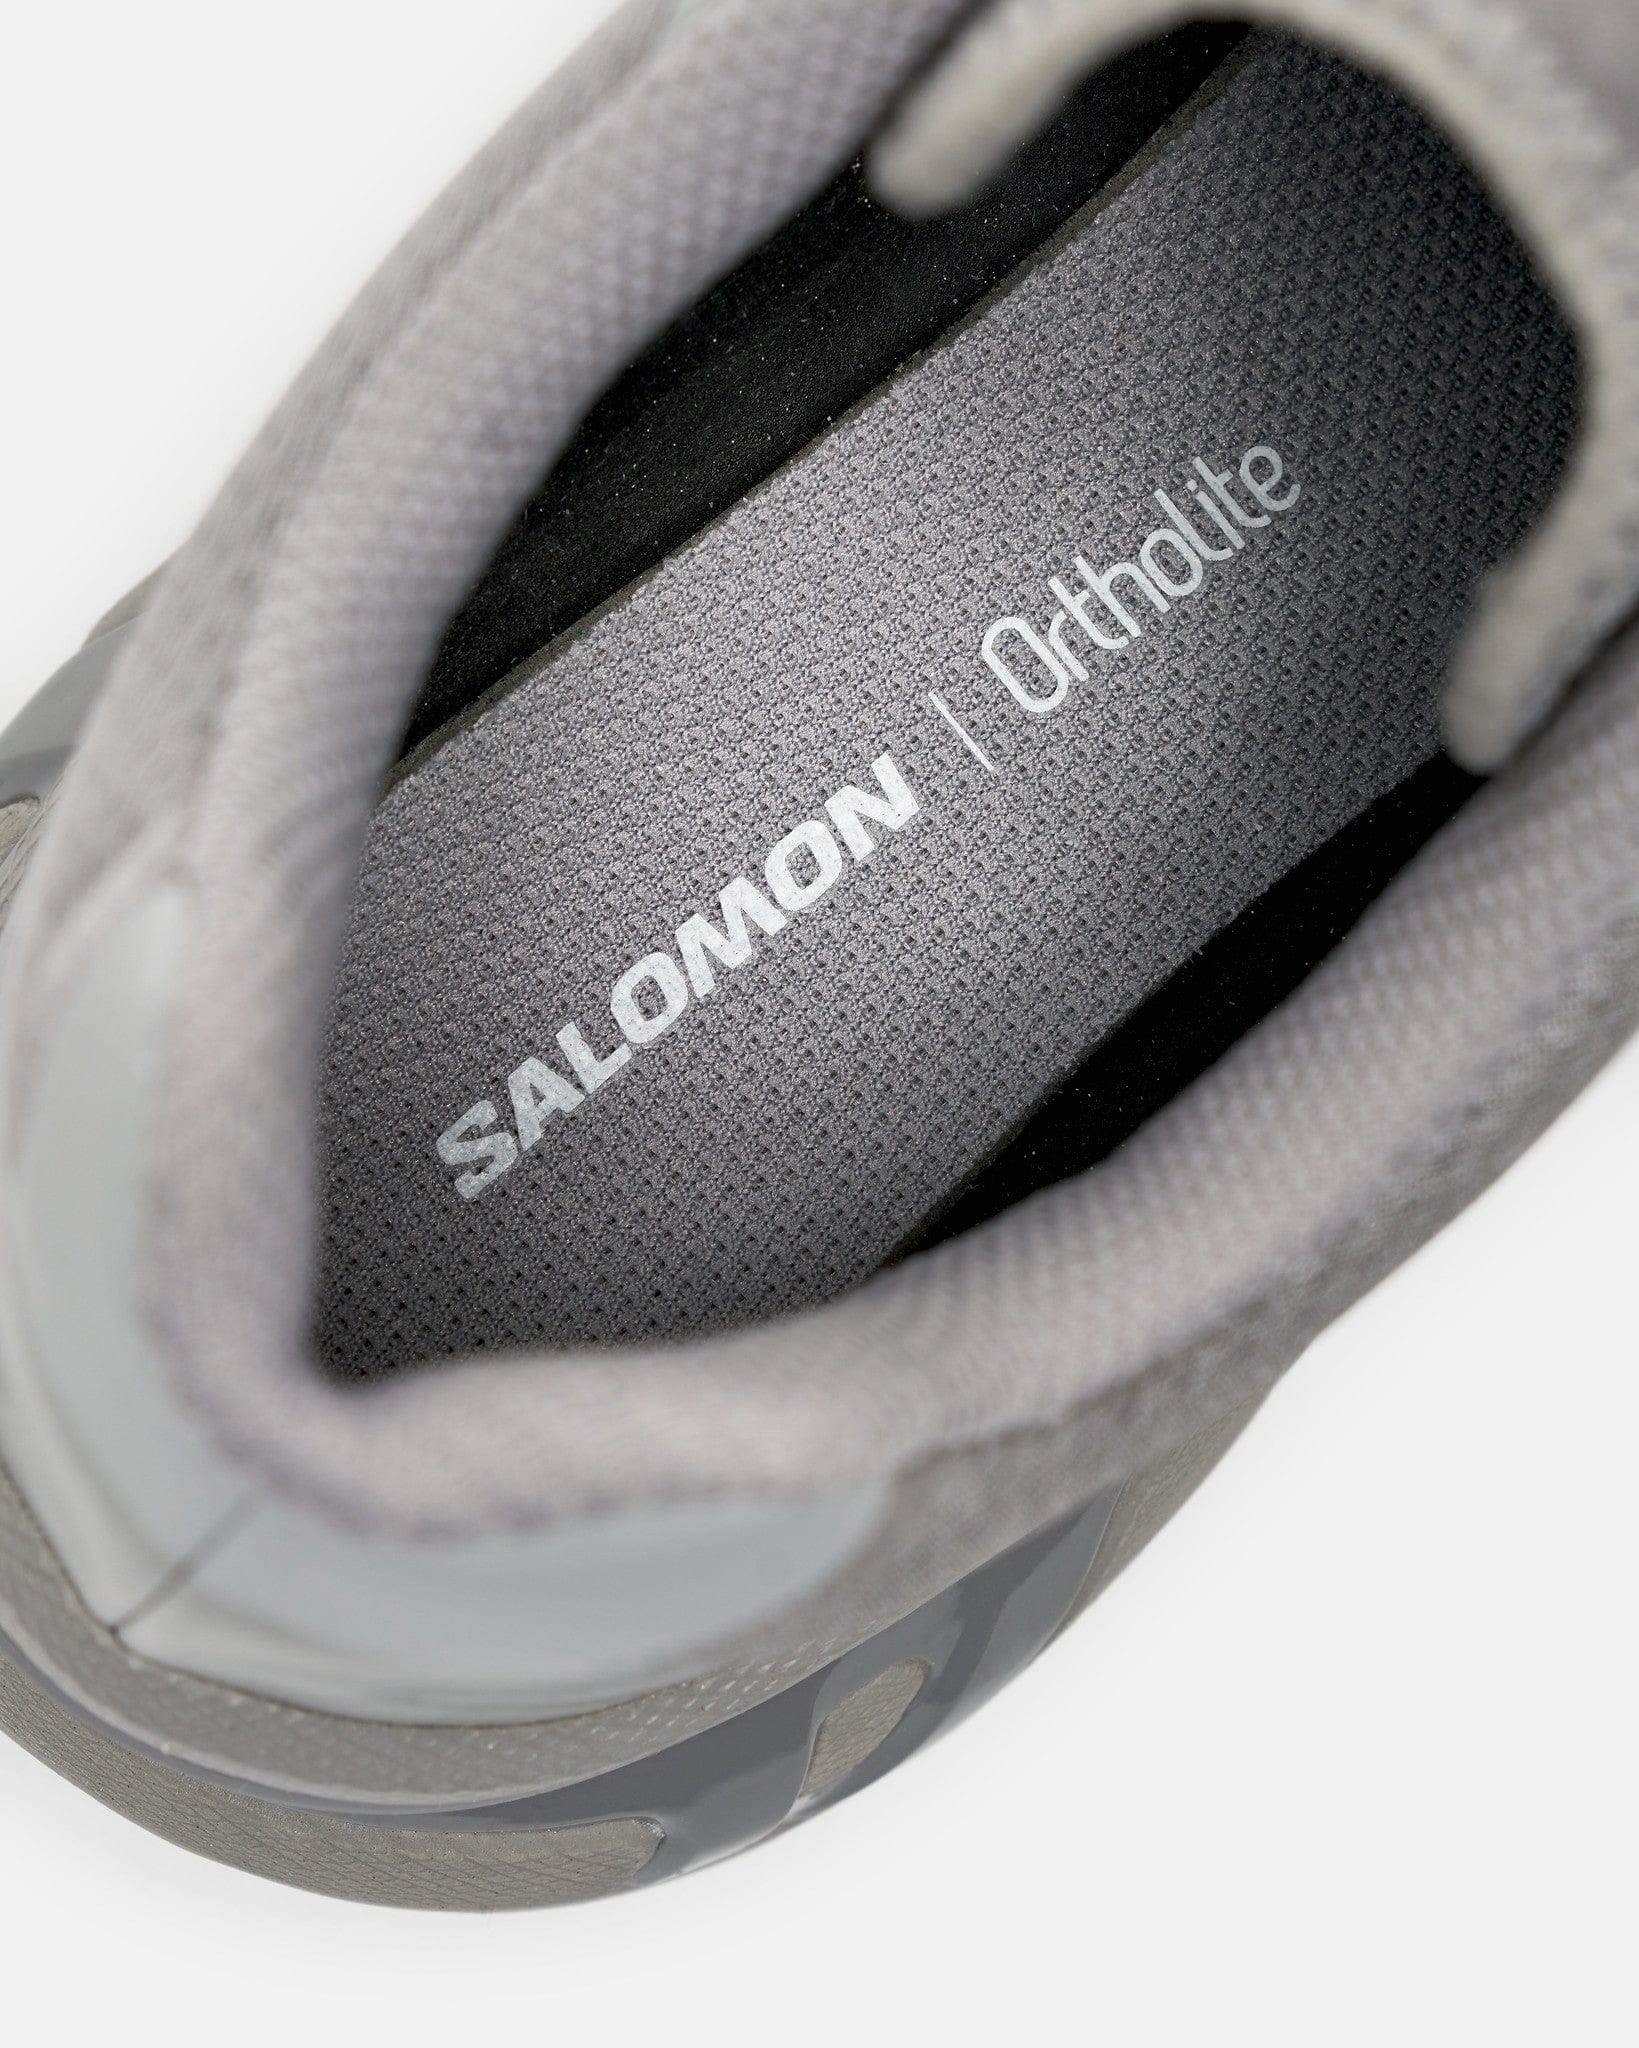 Salomon Men's Sneakers XT-6 Ghost Gray/Gray Flannel